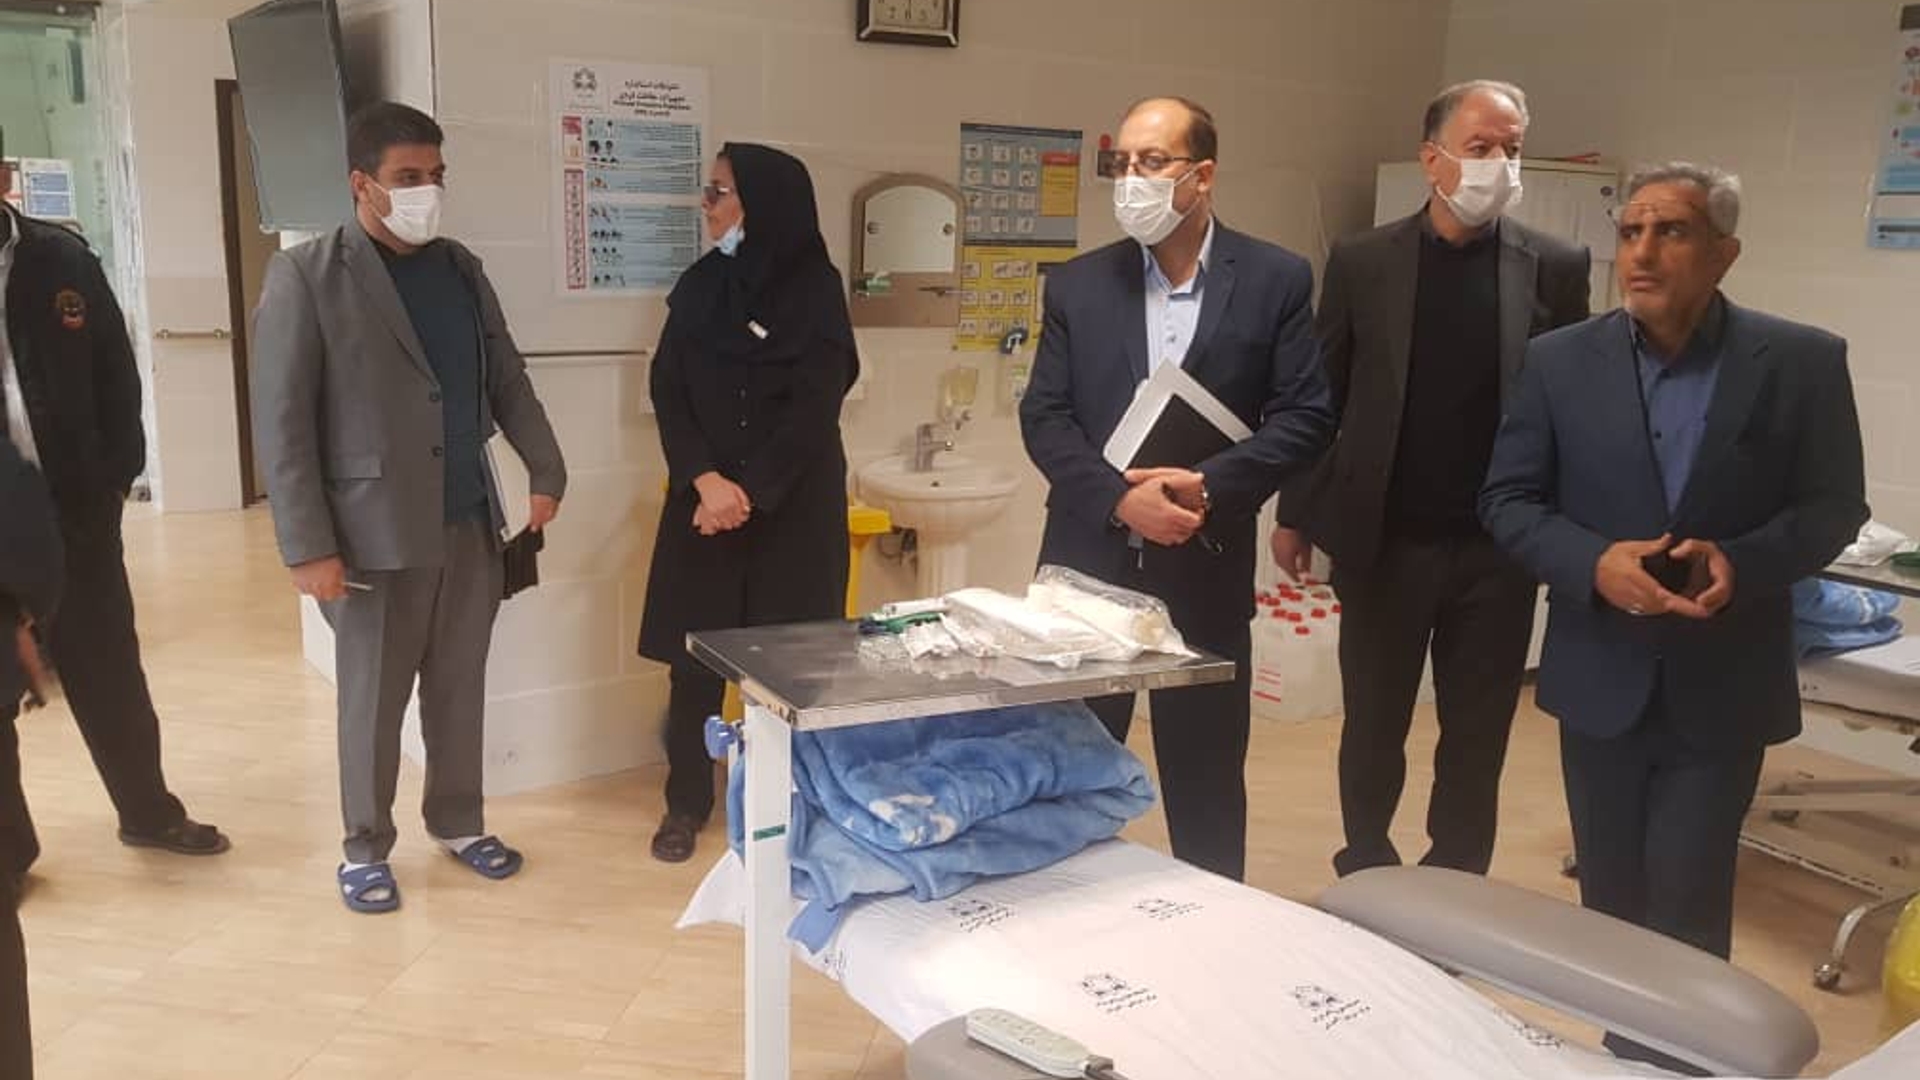 حضور تیم بازرسی دفتر در بیمارستان امام سجاد شهرستان آشتیان